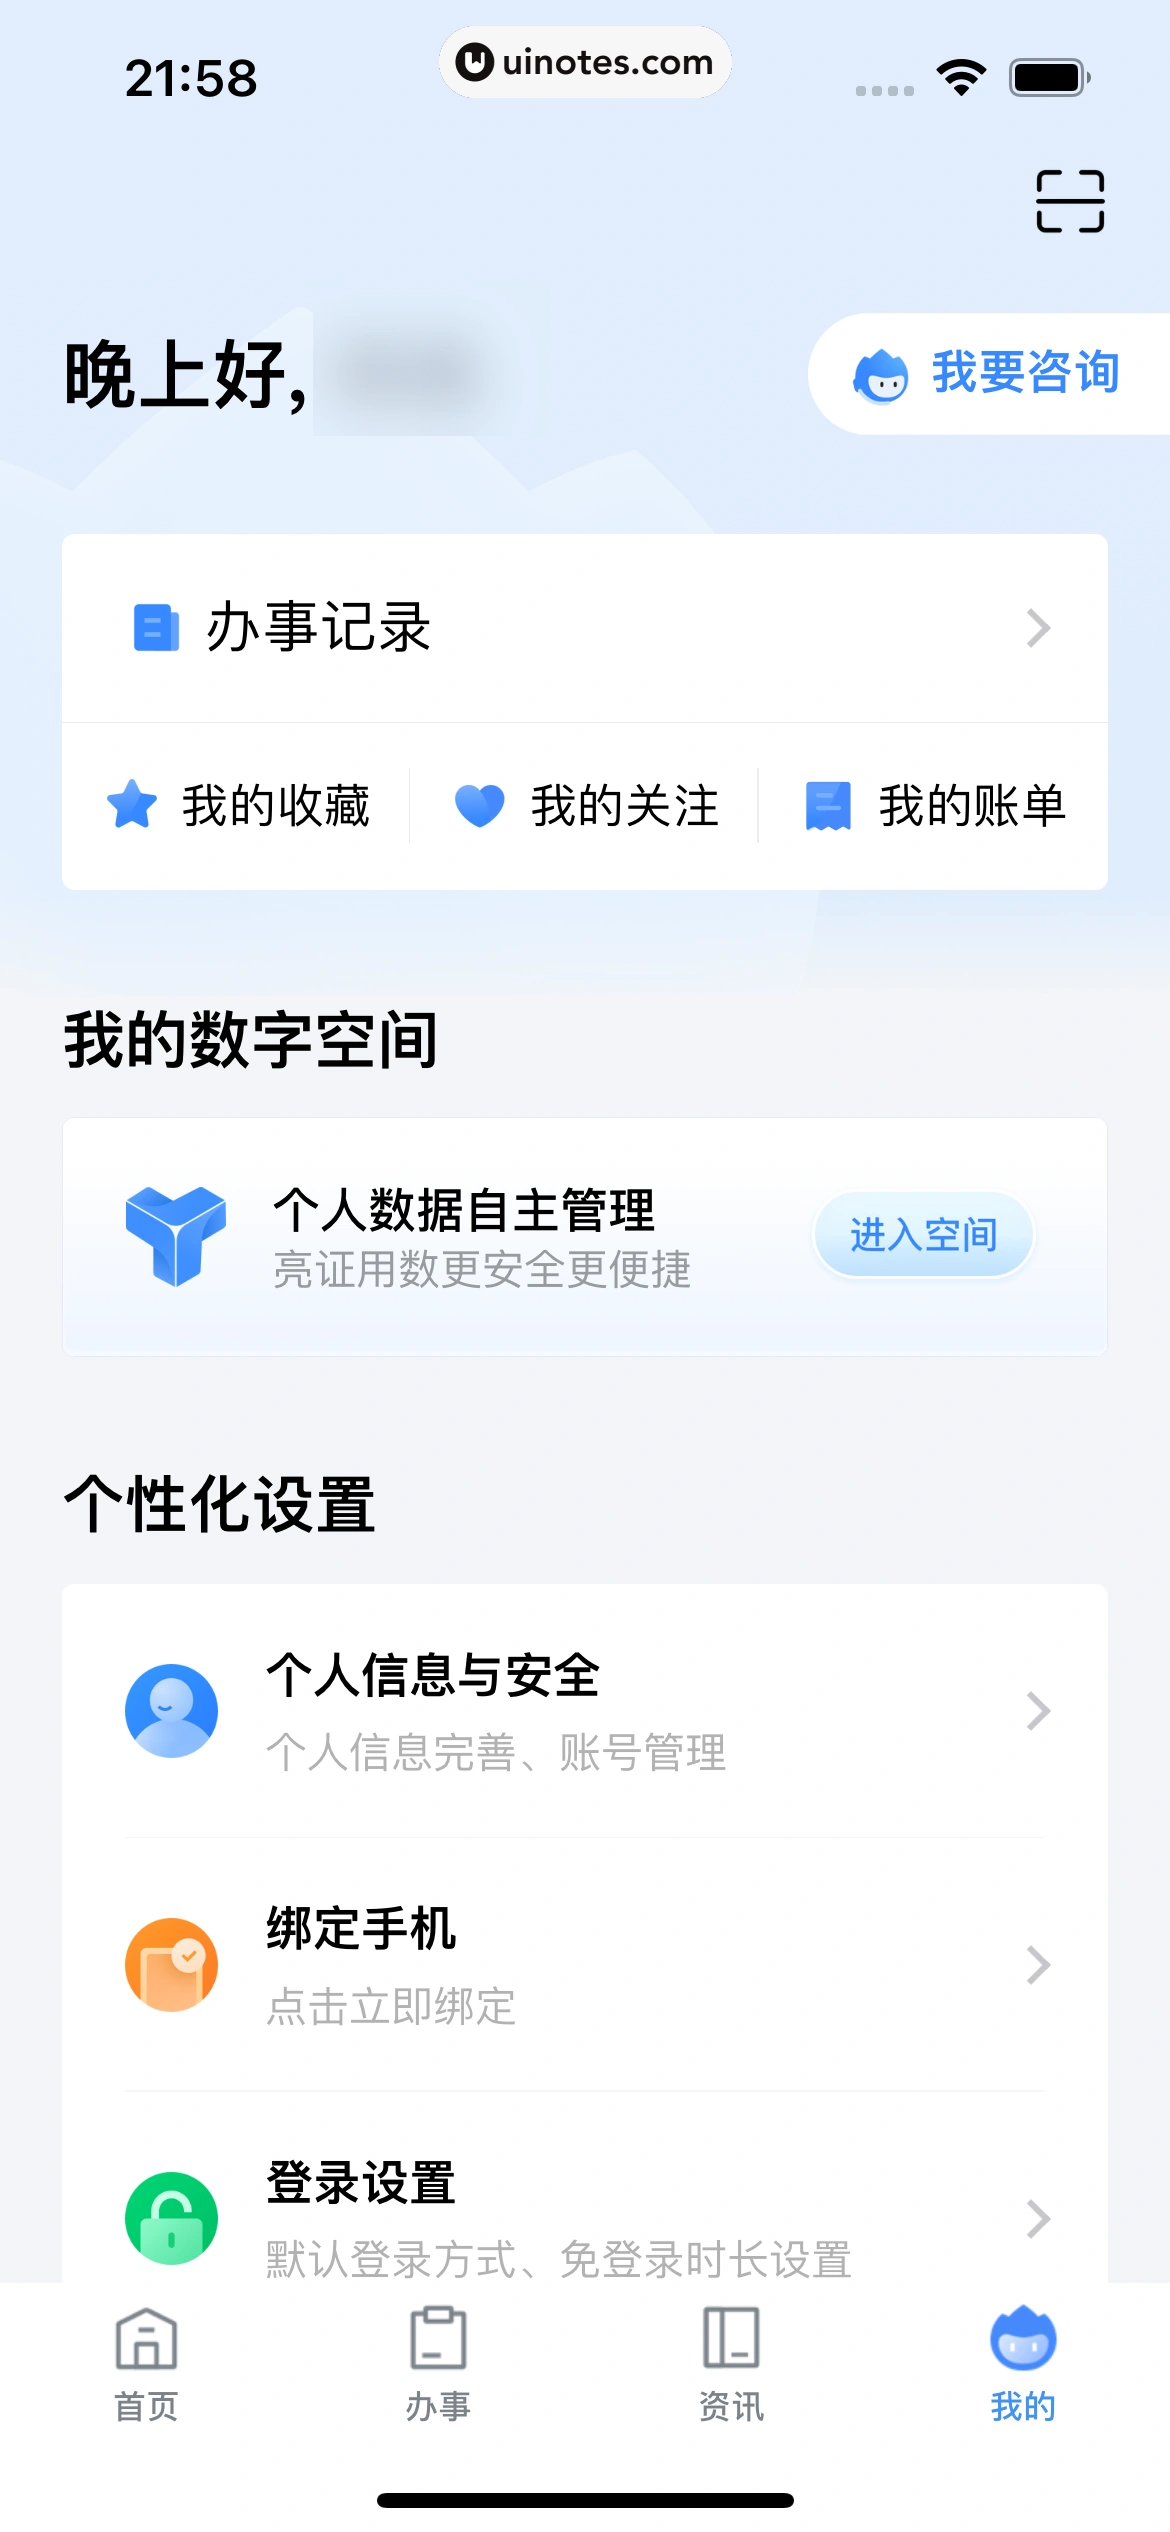 粤省事 App 截图 129 - UI Notes